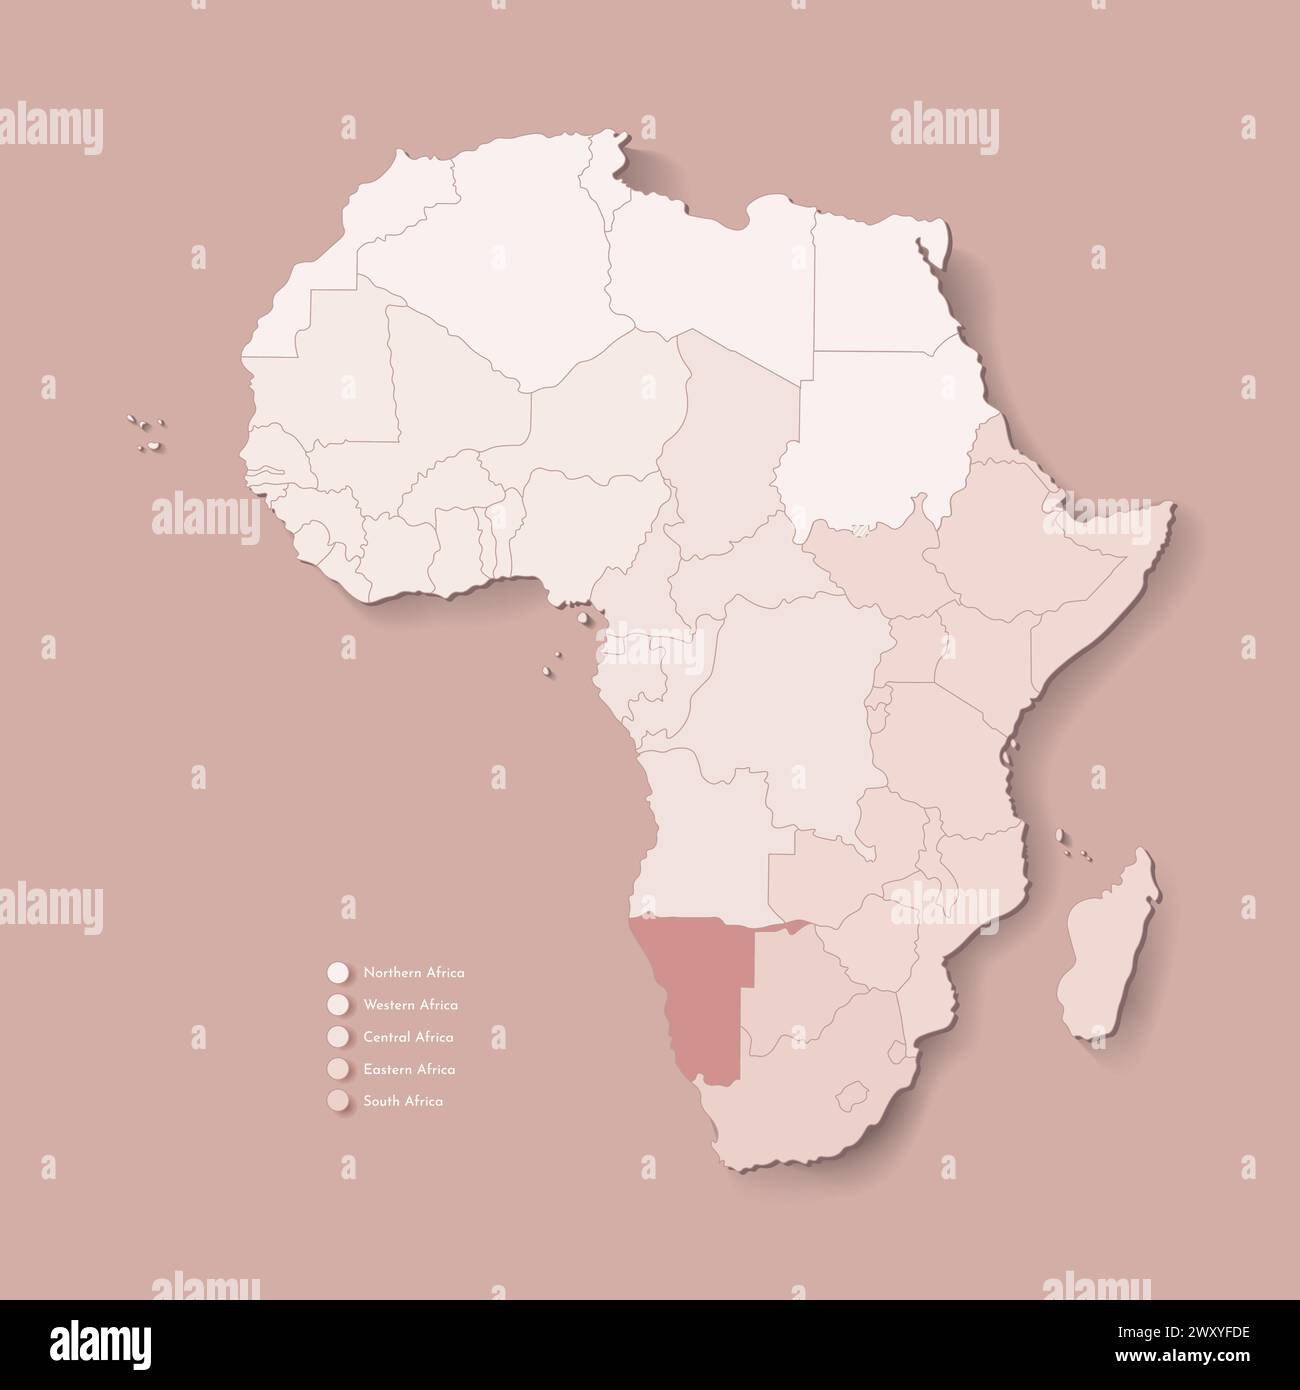 Illustrazione vettoriale con continente africano con confini di tutti gli stati e paese marcato Namibia. Mappa politica in colori marroni con occidentale, sud AN Illustrazione Vettoriale